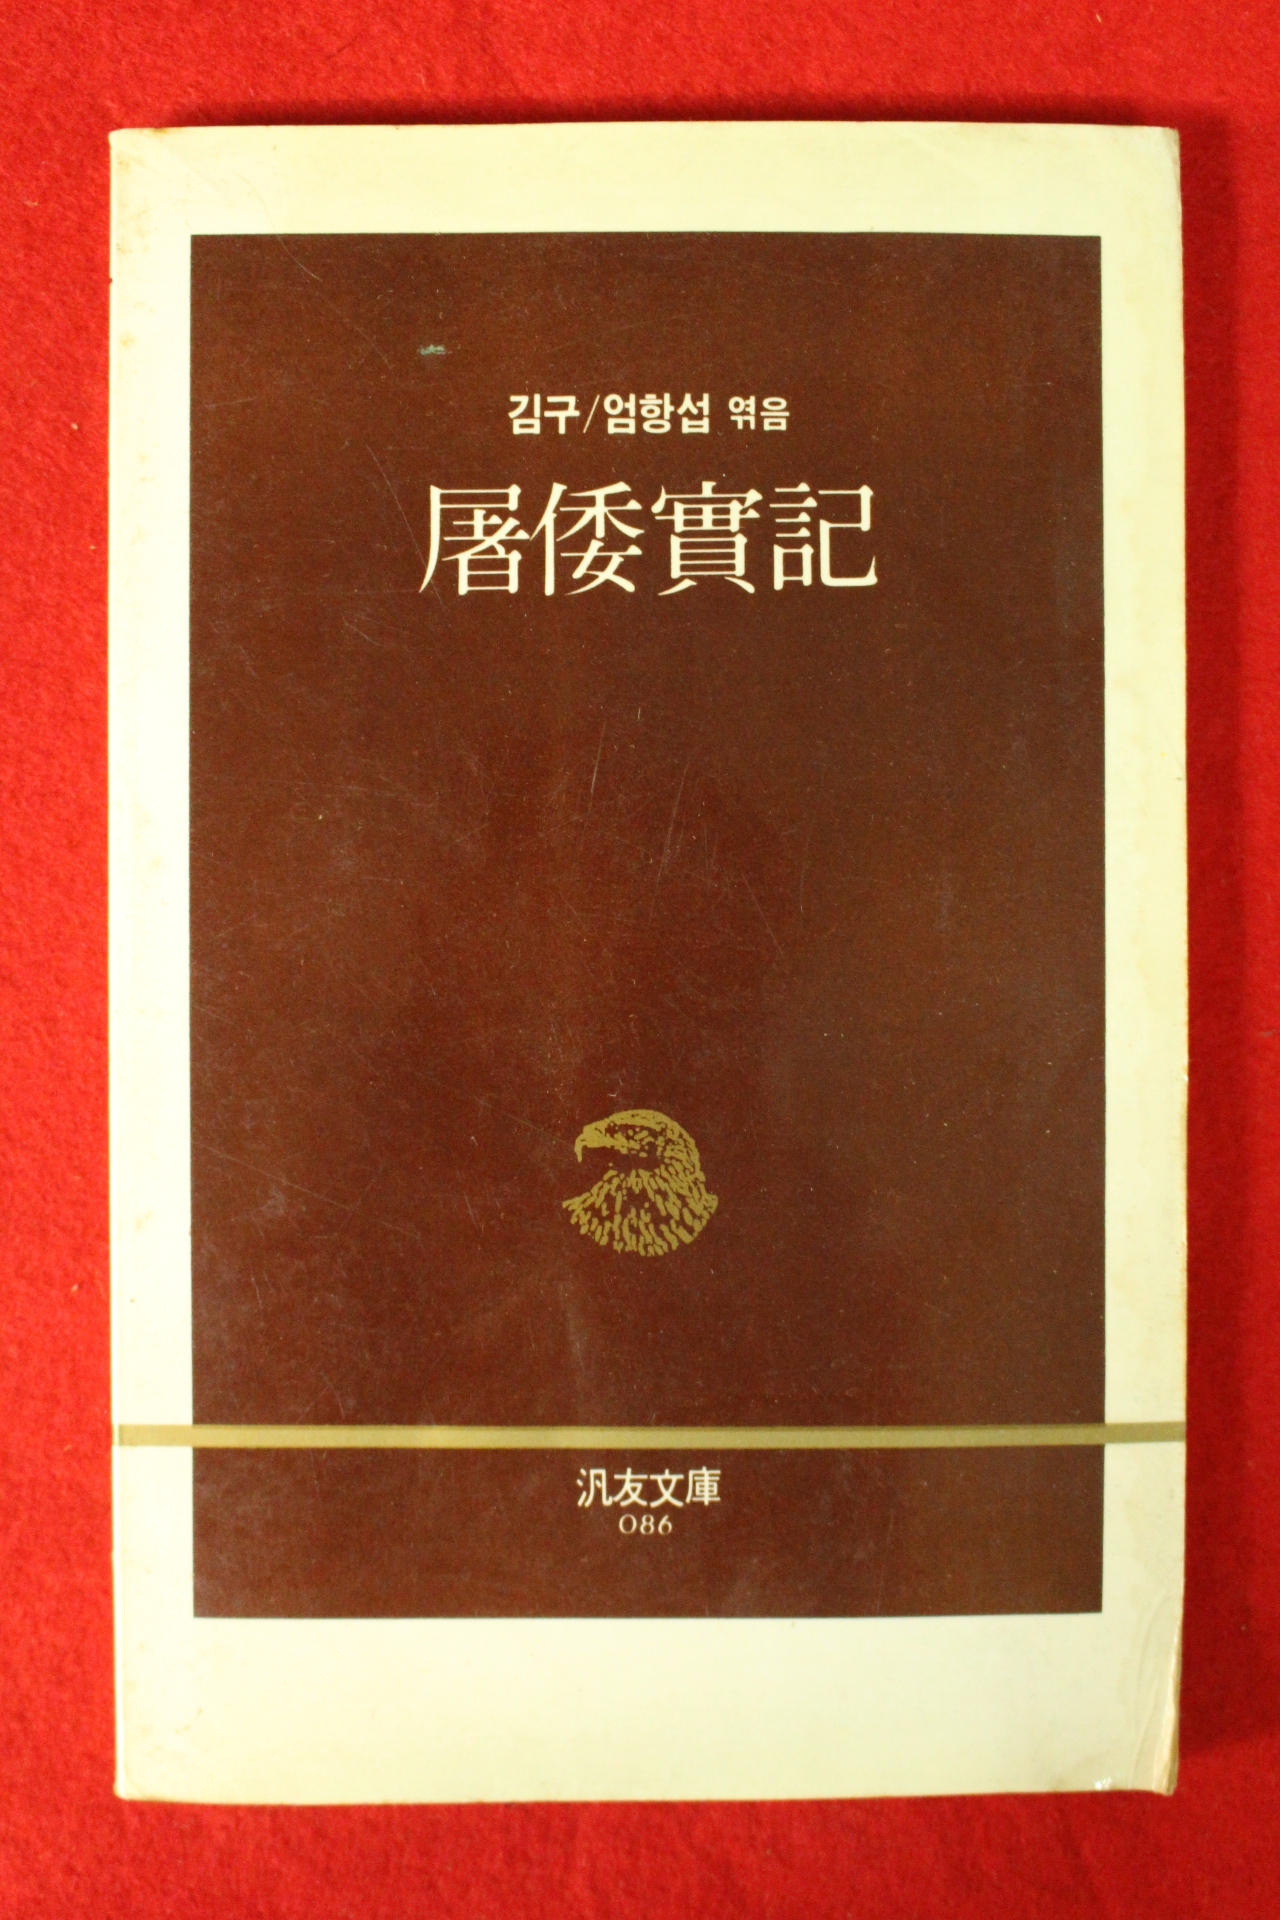 1989년초판 김구 도왜실기(屠倭實記)